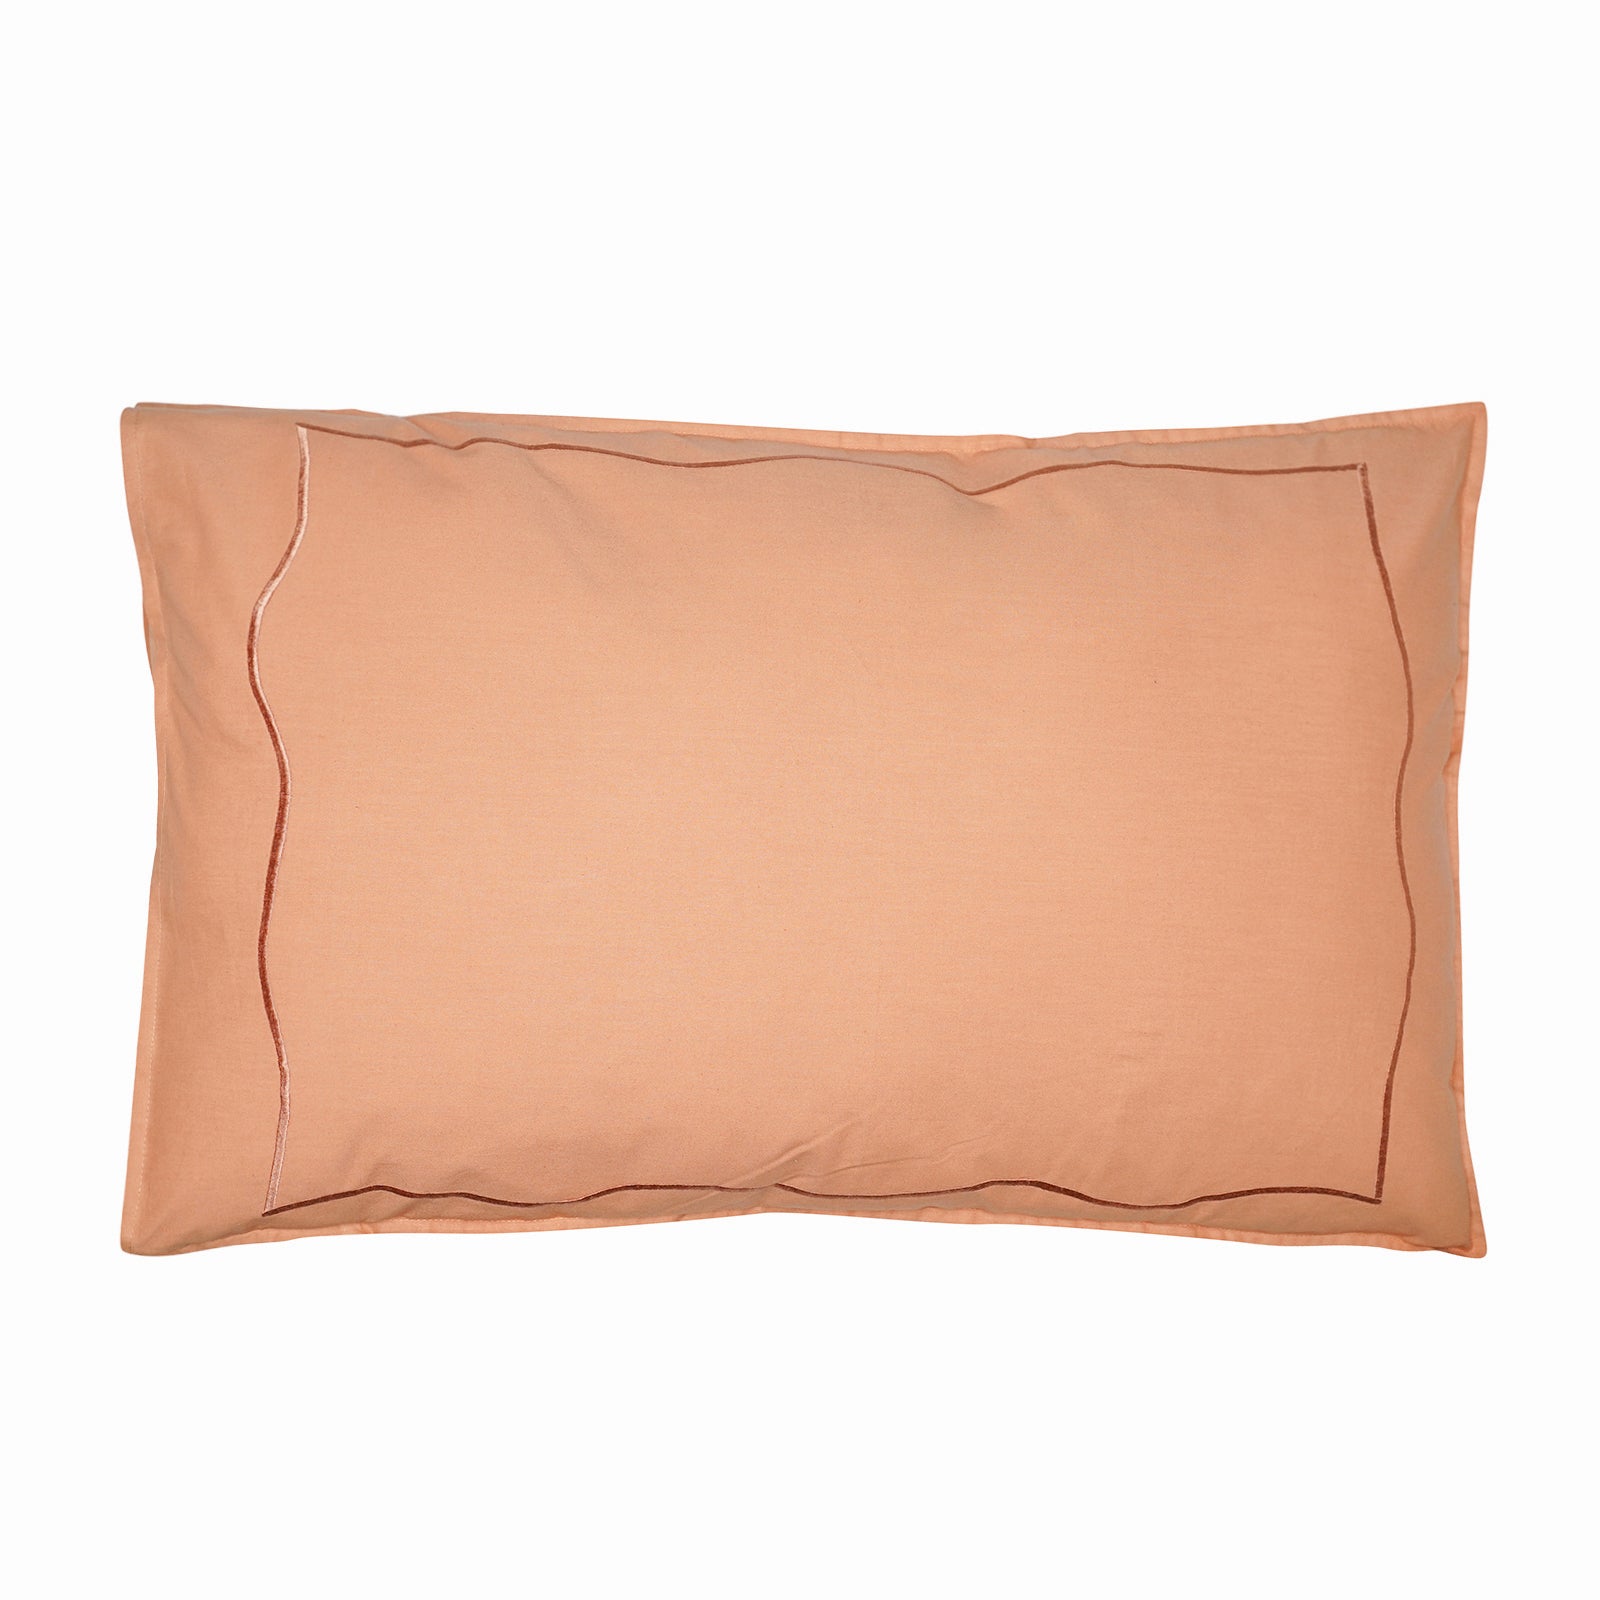 Scalloped Pillow Cover - Vintage Scalloped Light Orange